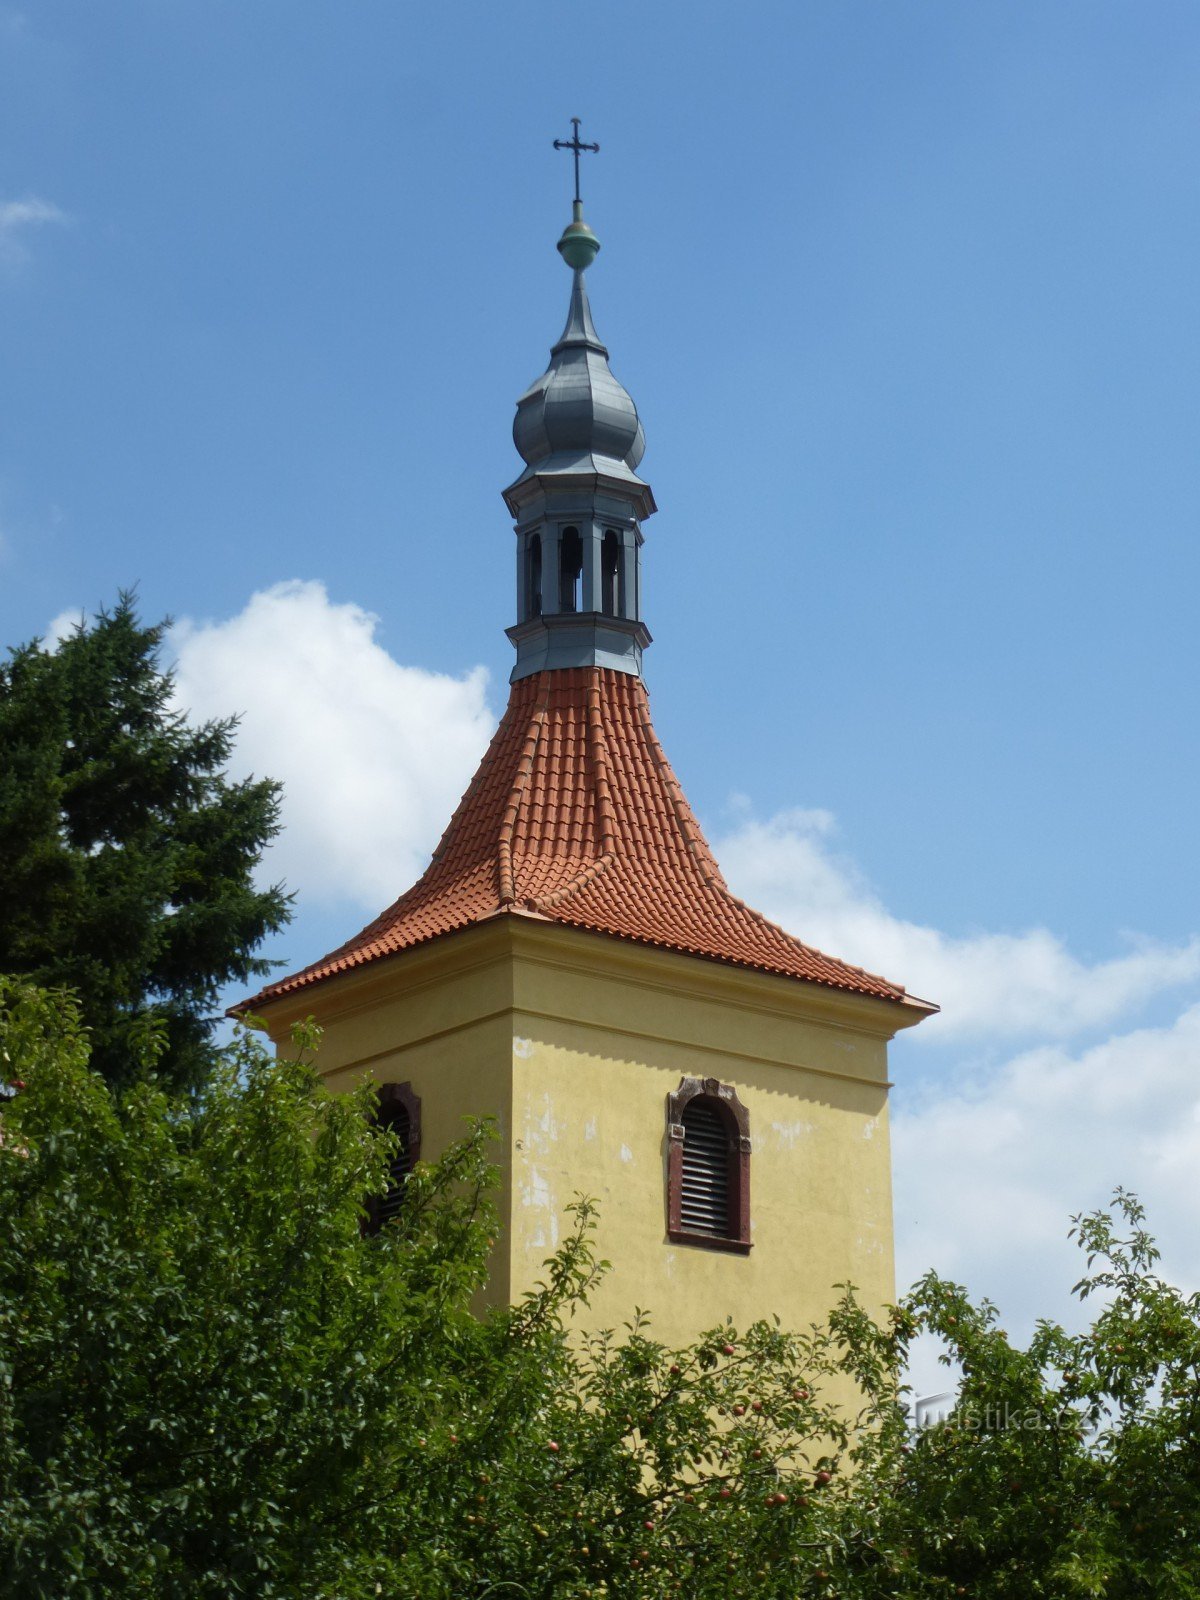 Kerk van St. Johannes de Doper - klokkentoren